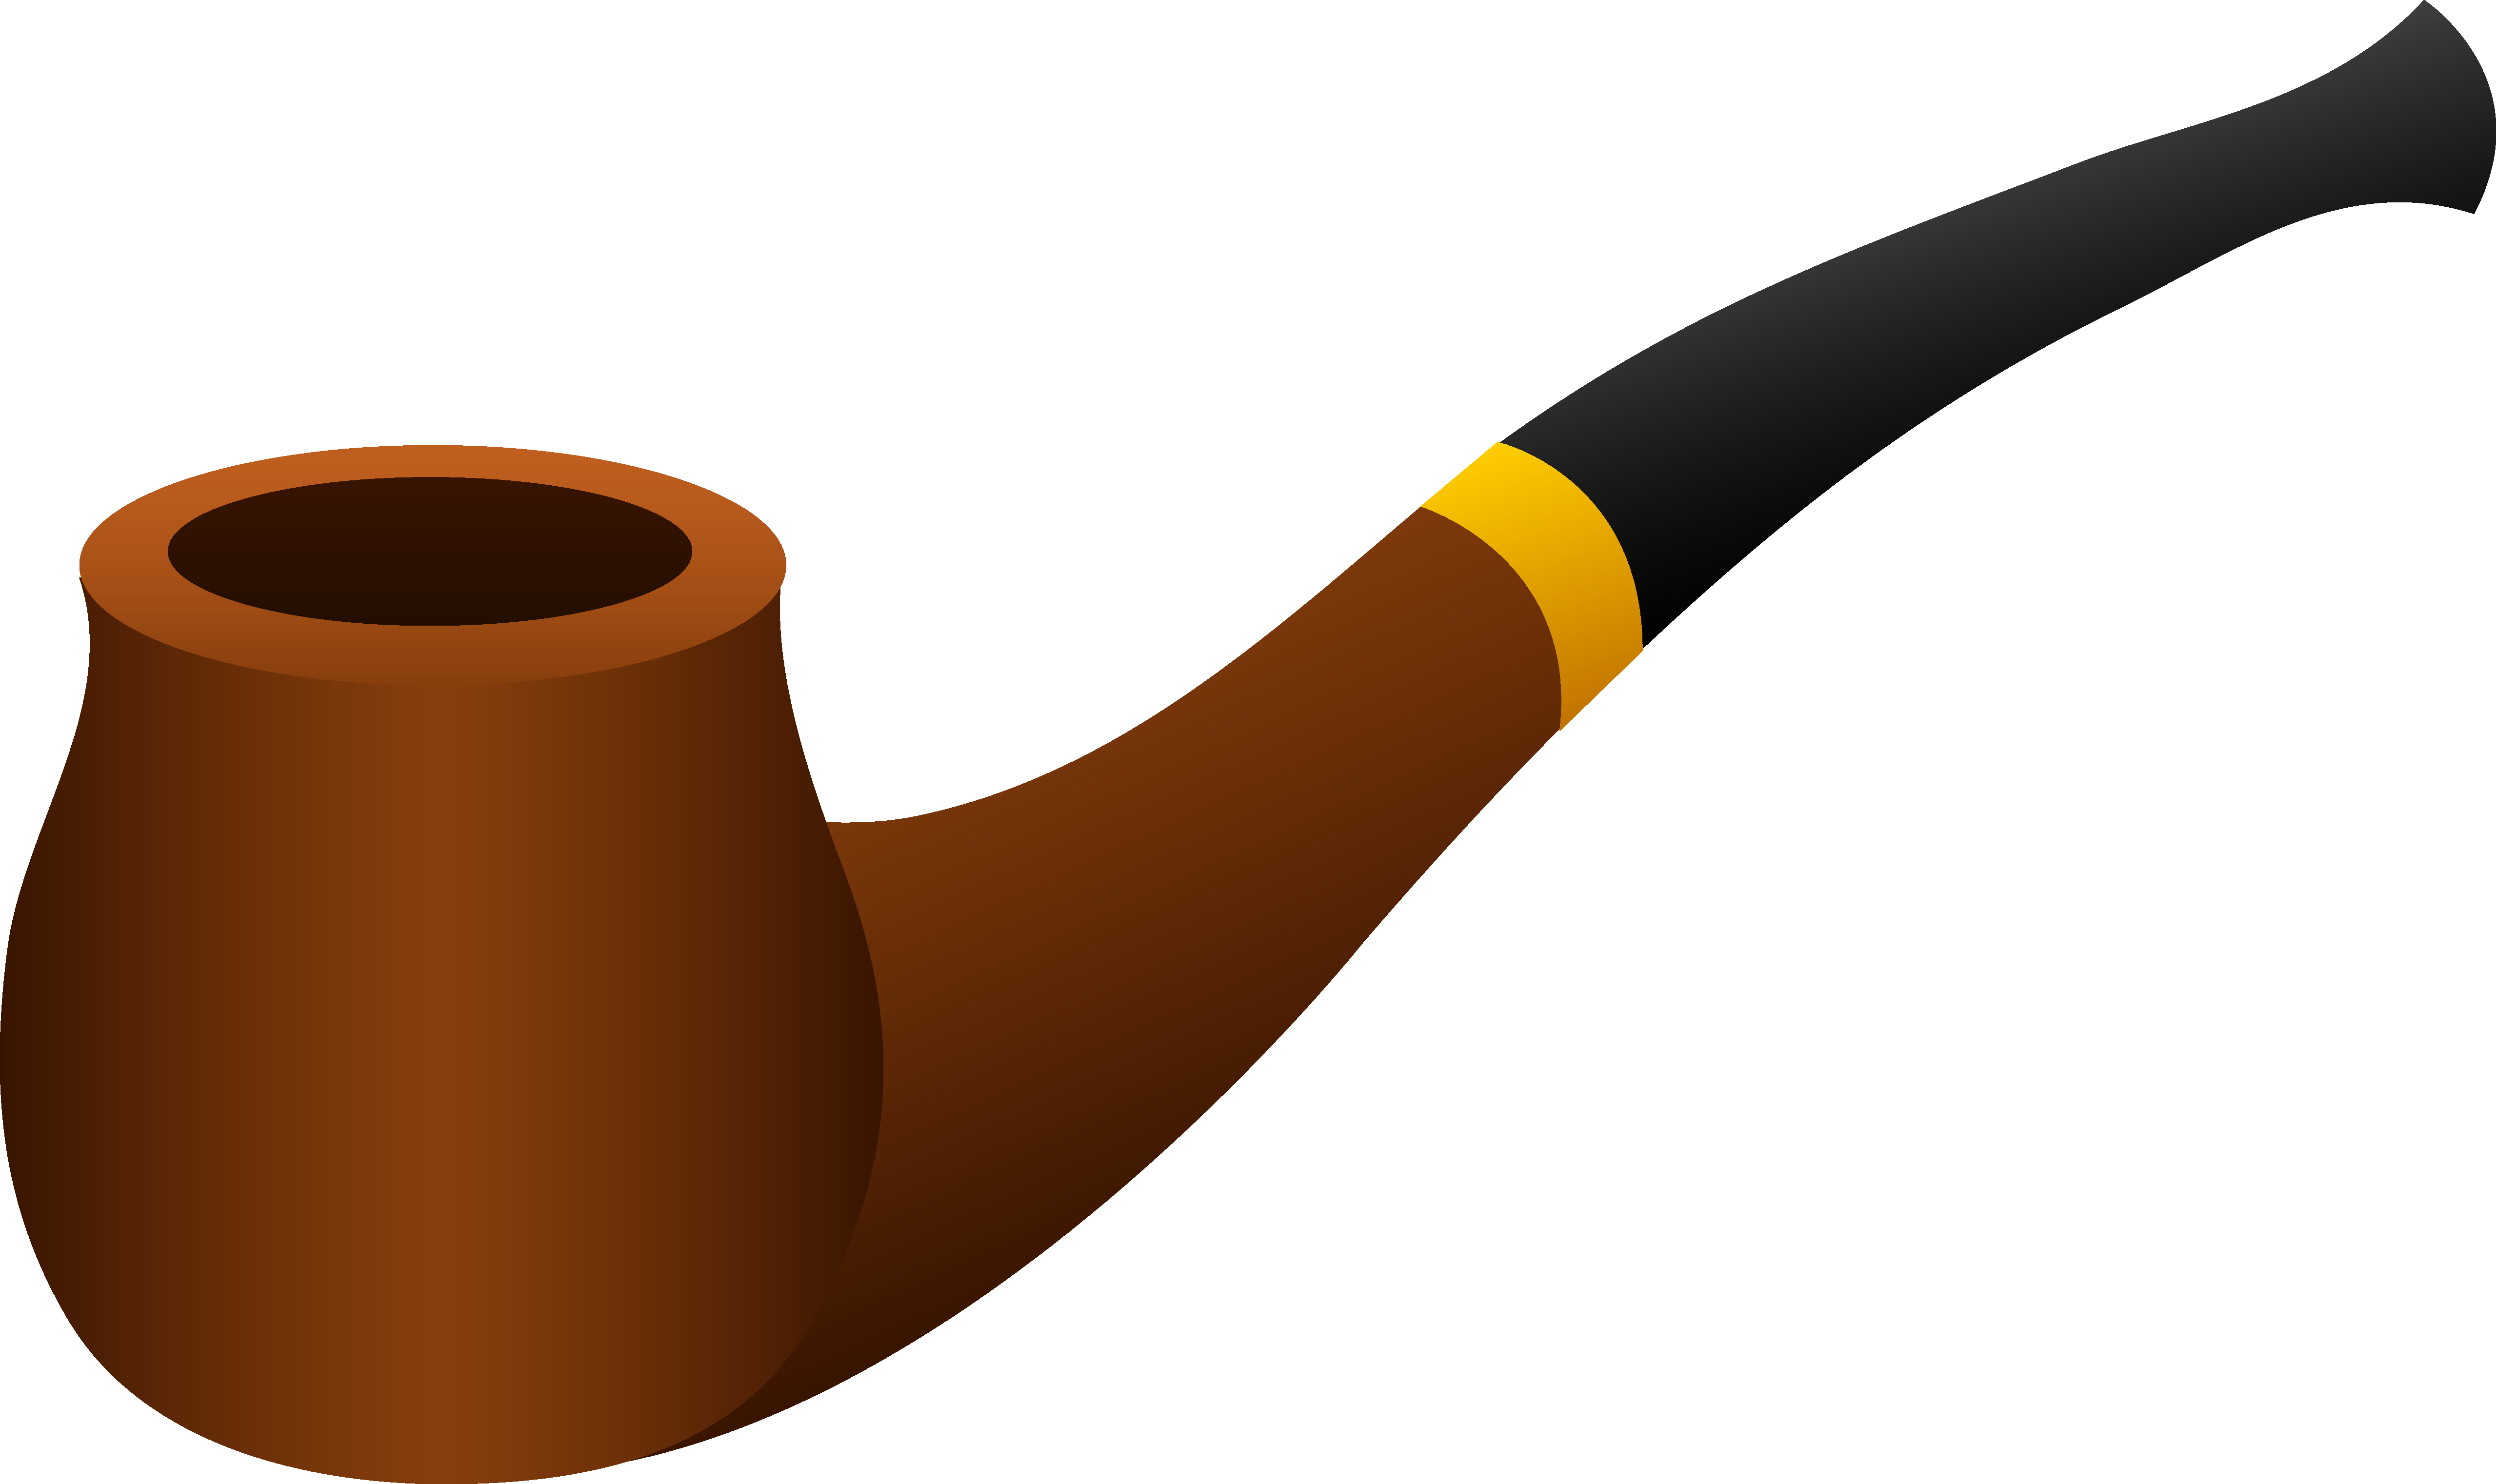 Cigar Clip Art